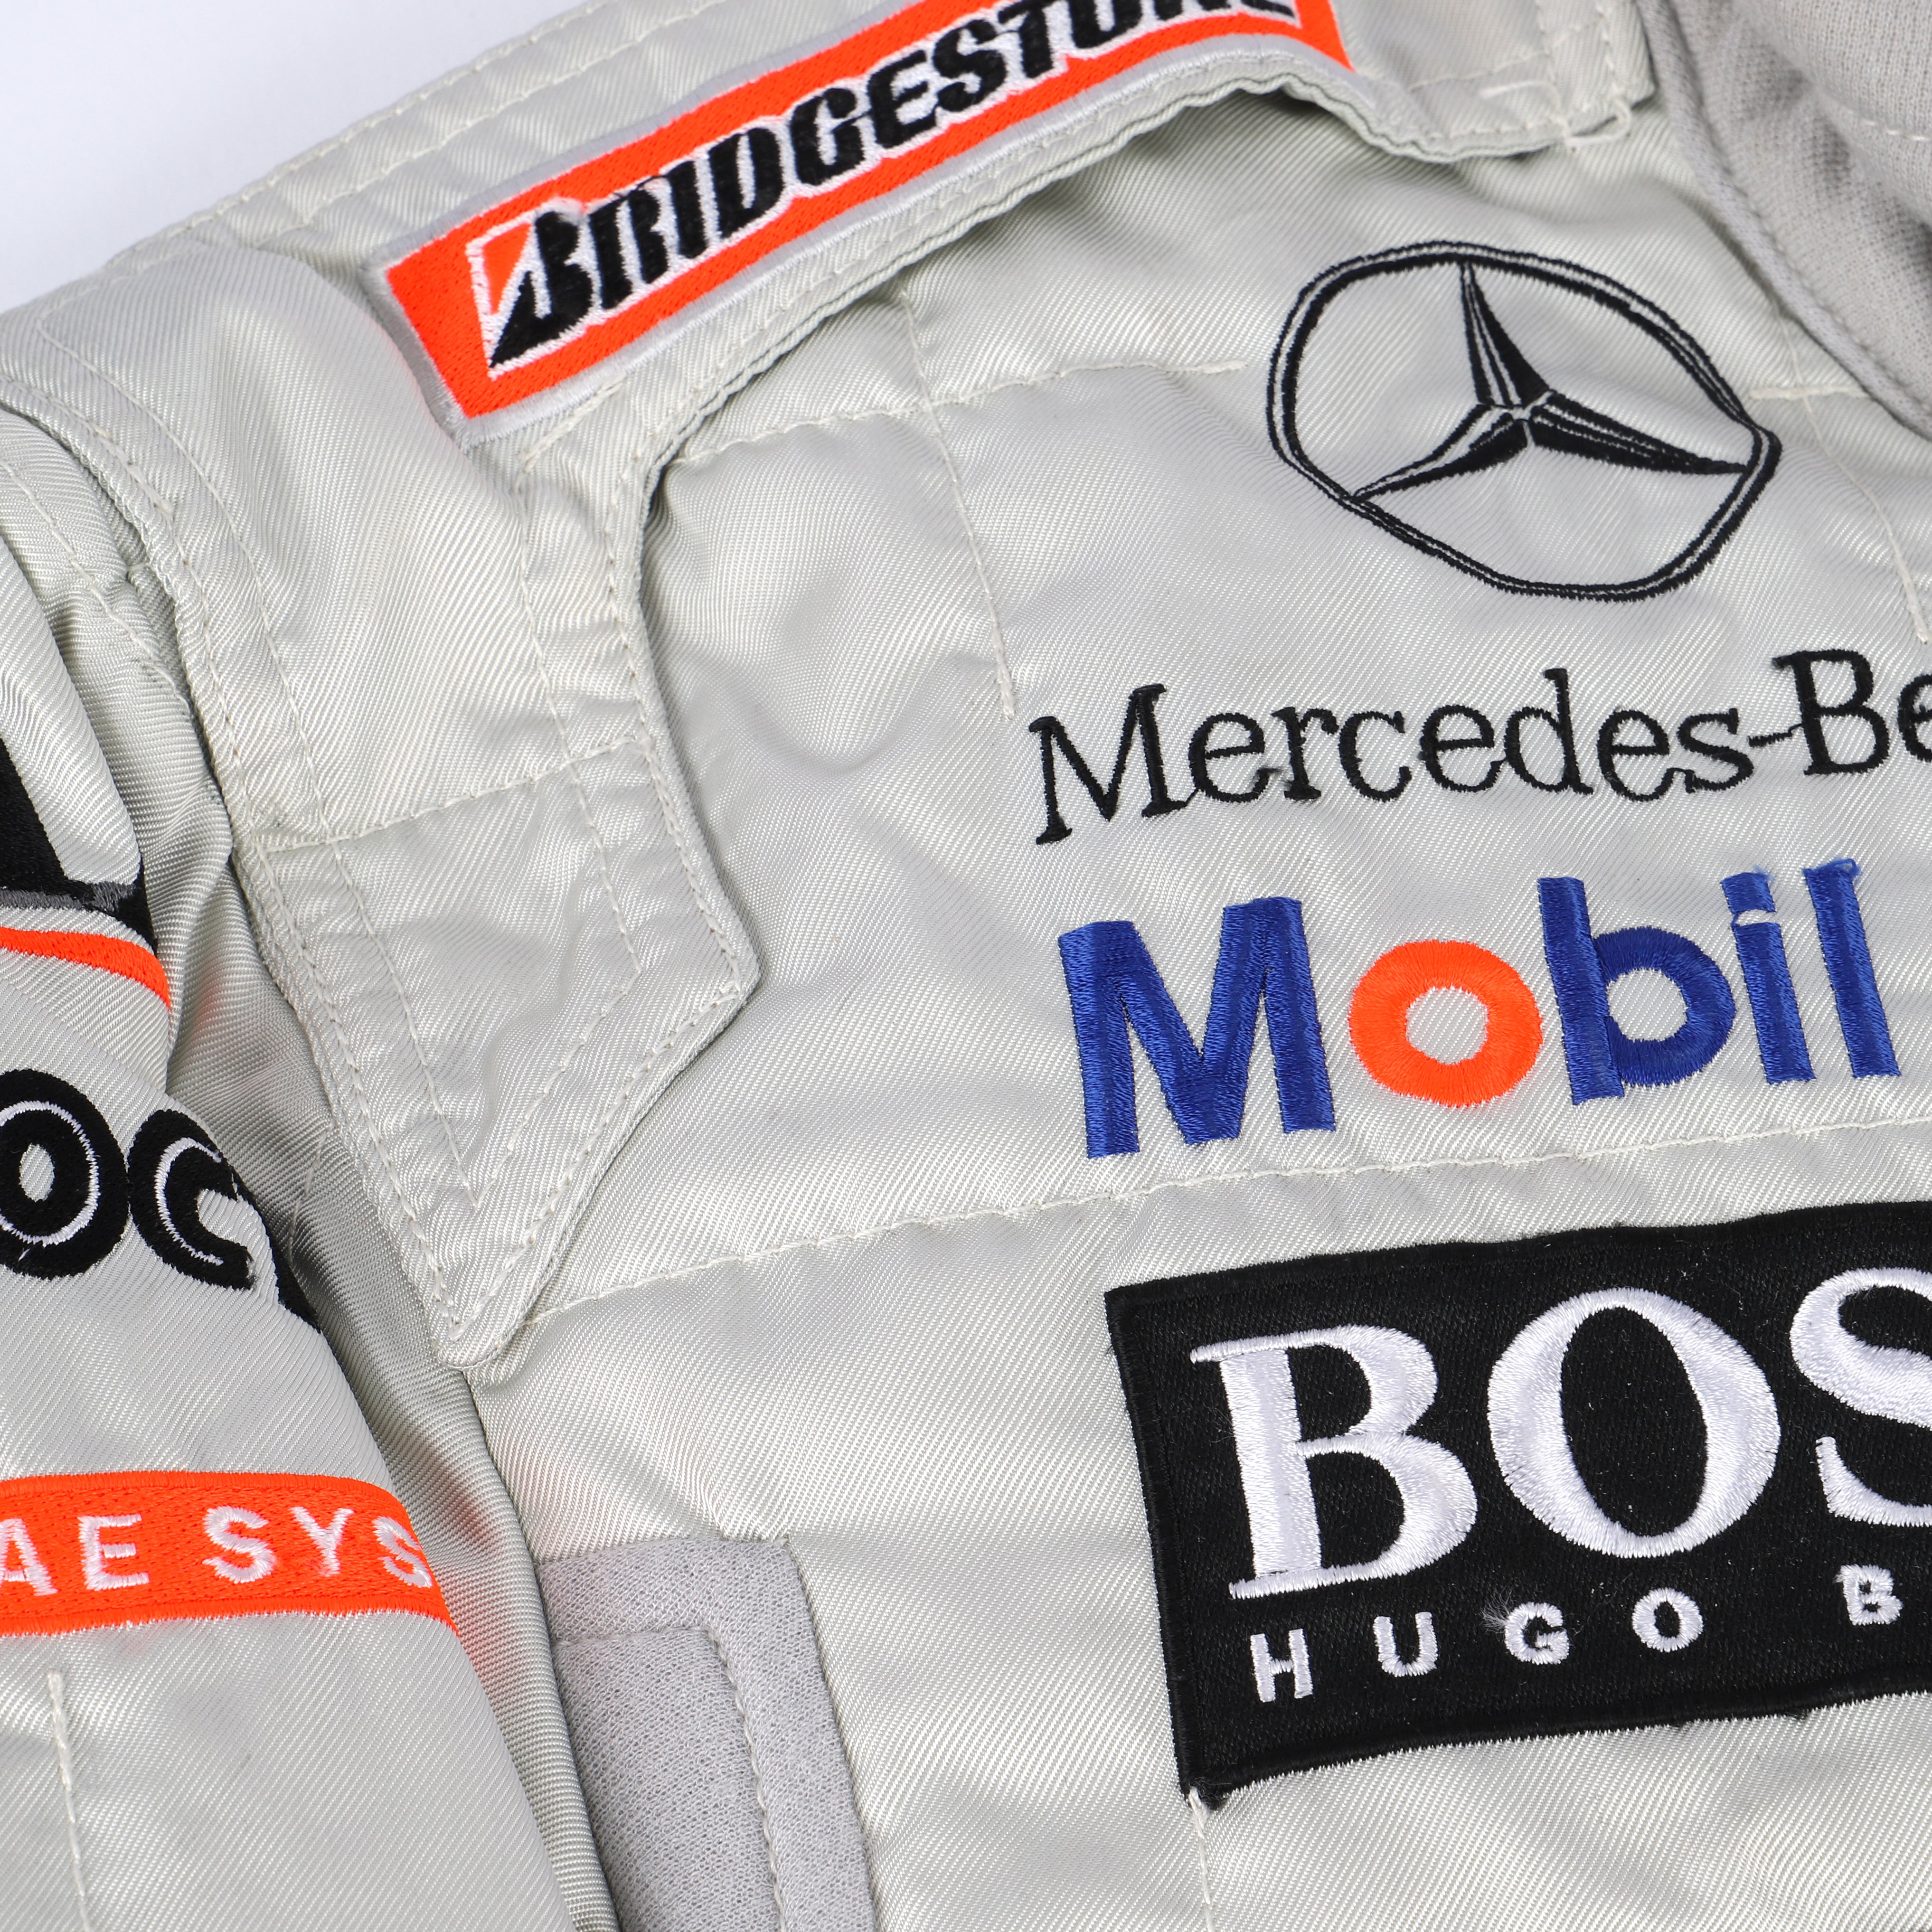 Alexander Wurz 2001 Replica McLaren F1 Team Race Suit with Warsteiner Branding